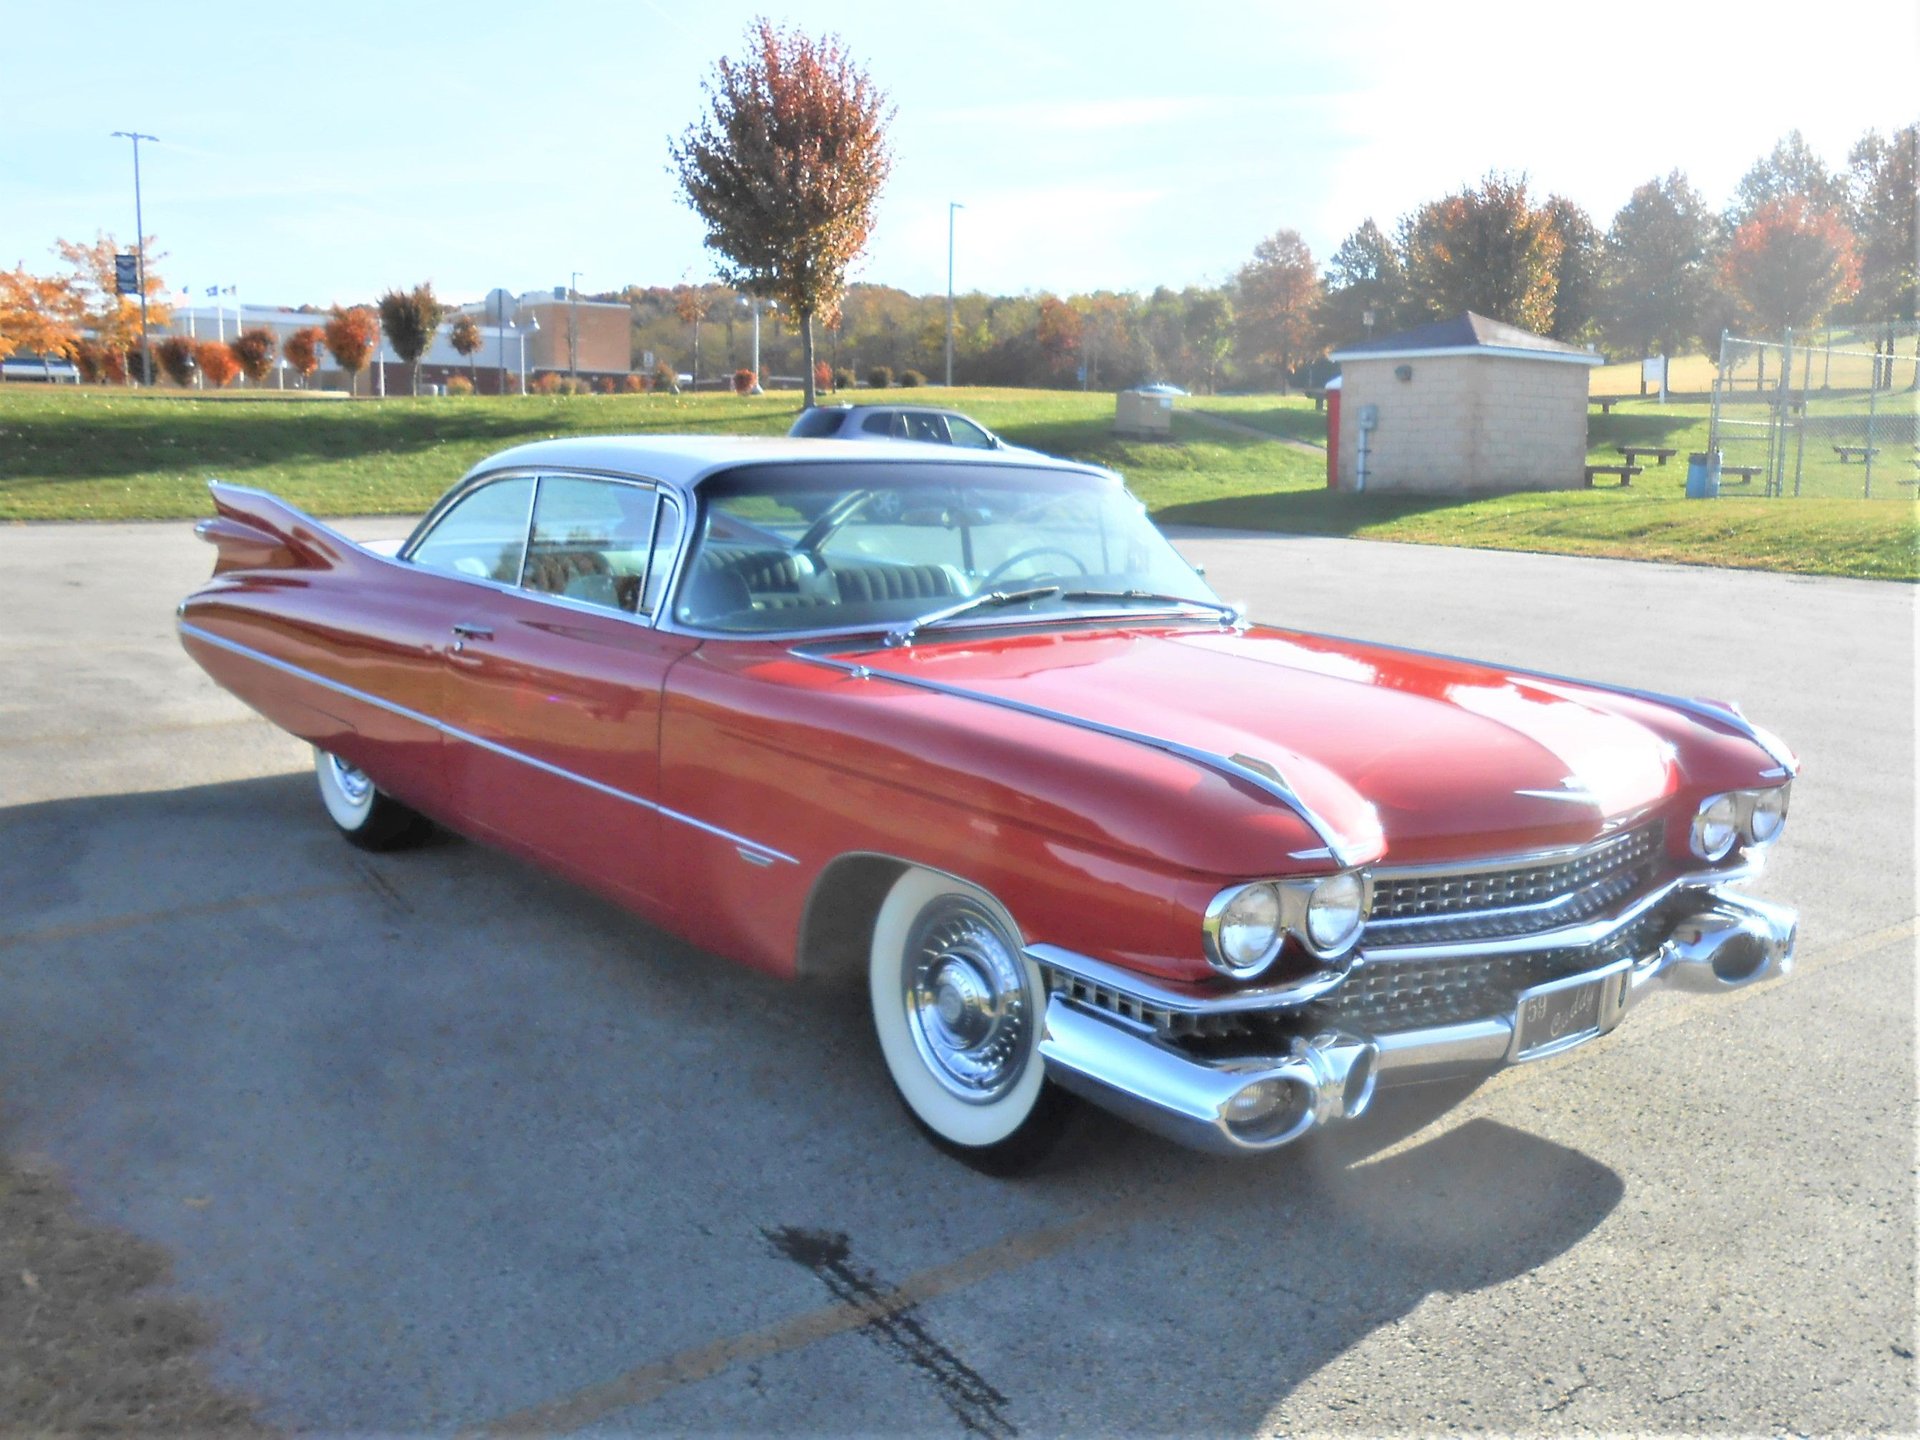 For Sale 1959 Cadillac Coupe de Ville